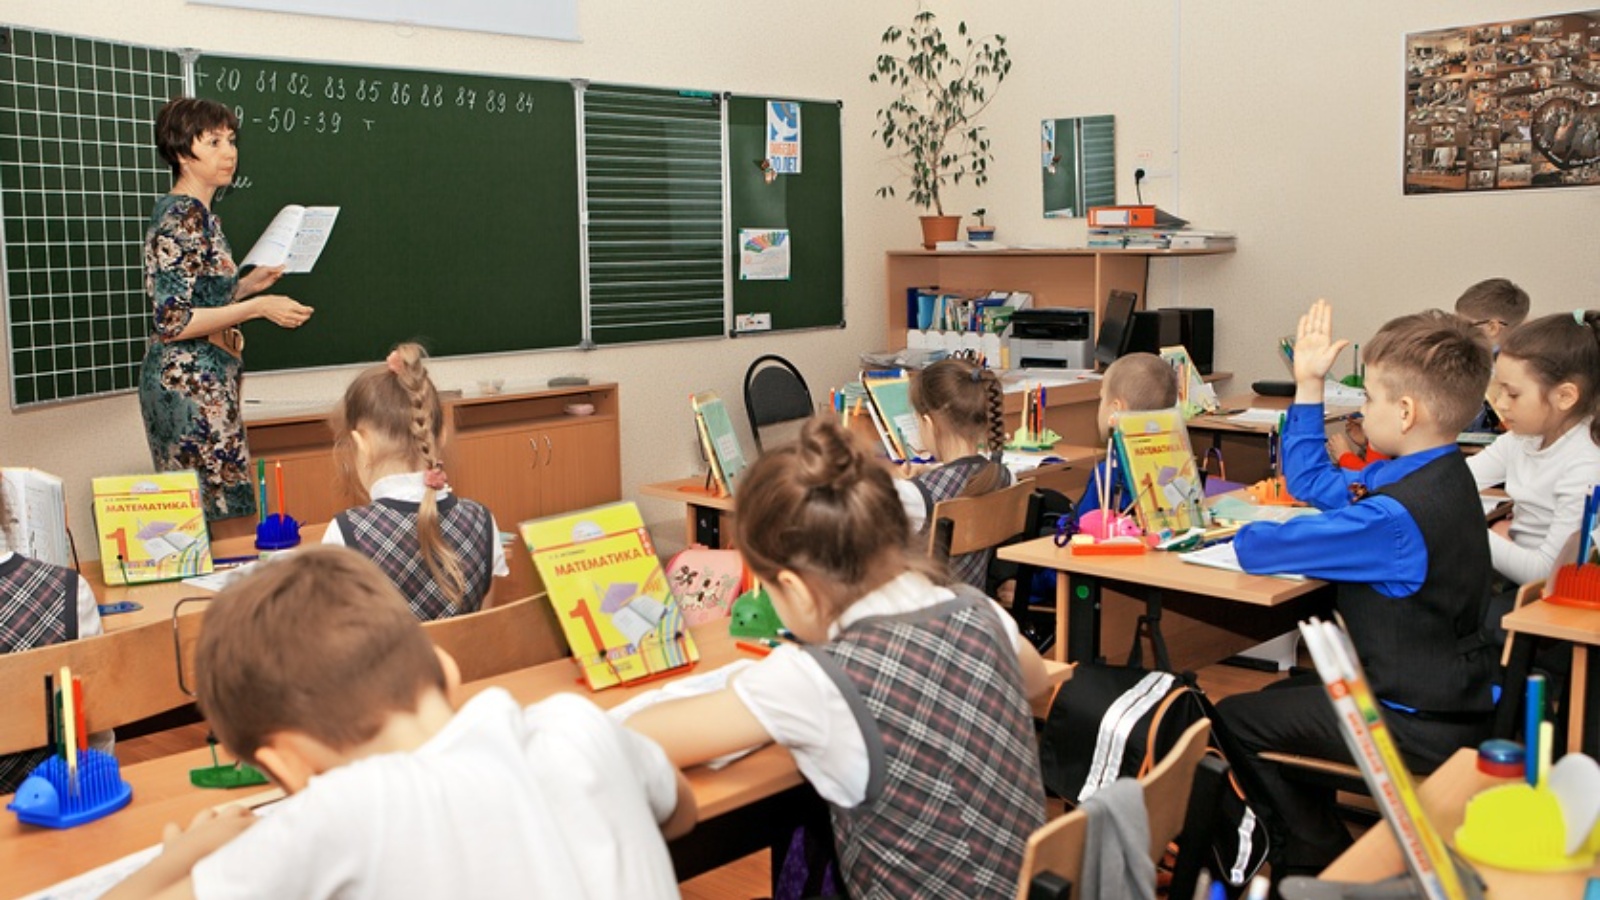 Что изучают в школах россии